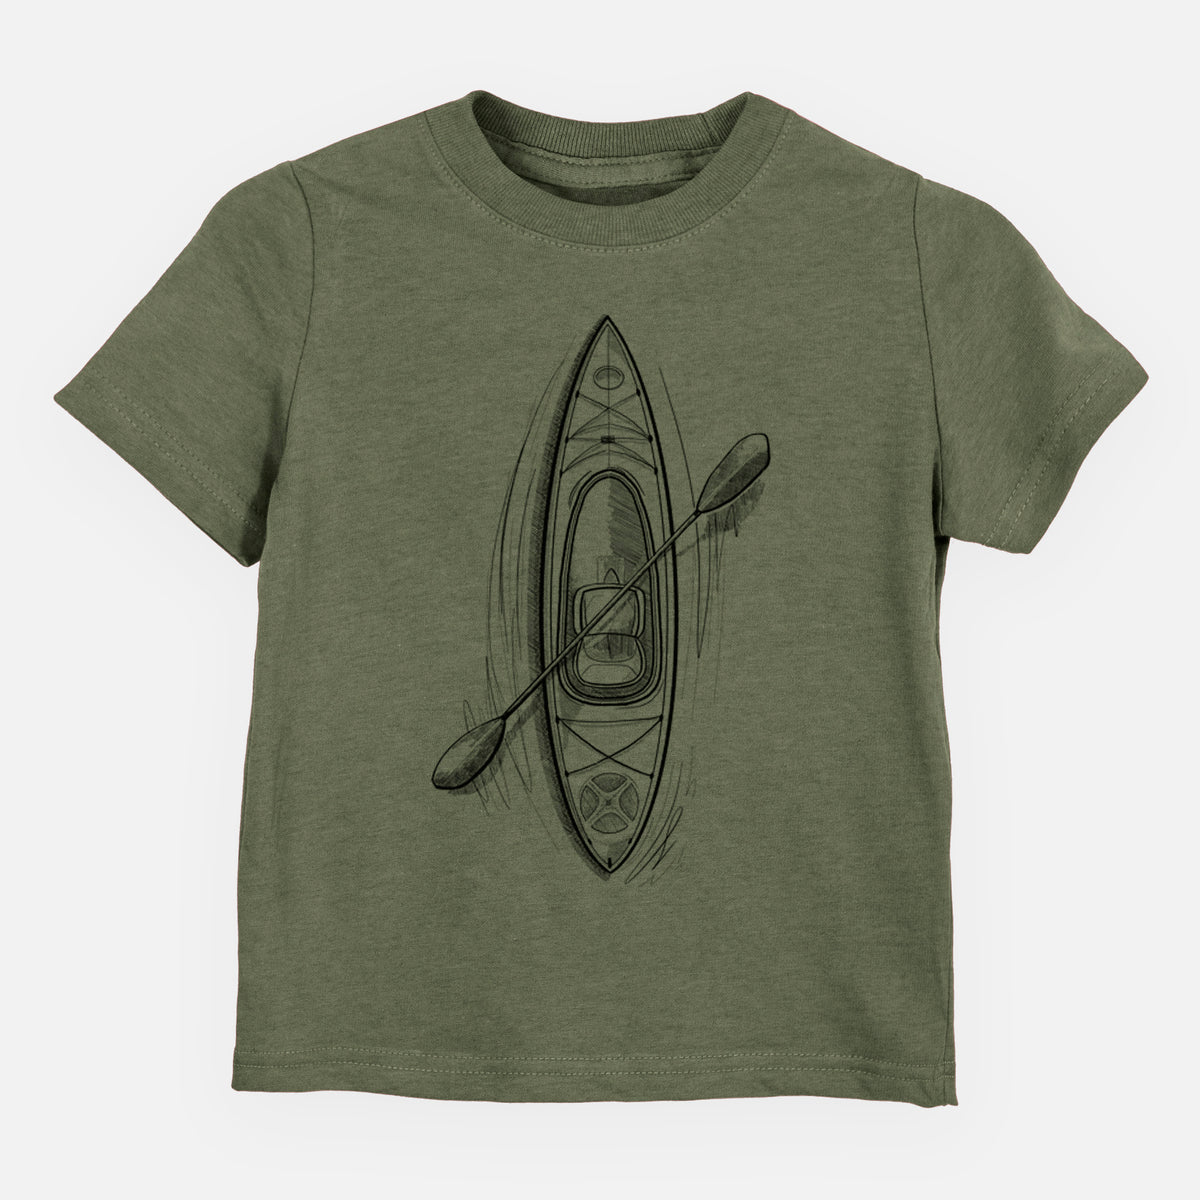 Kayak - Kids Shirt